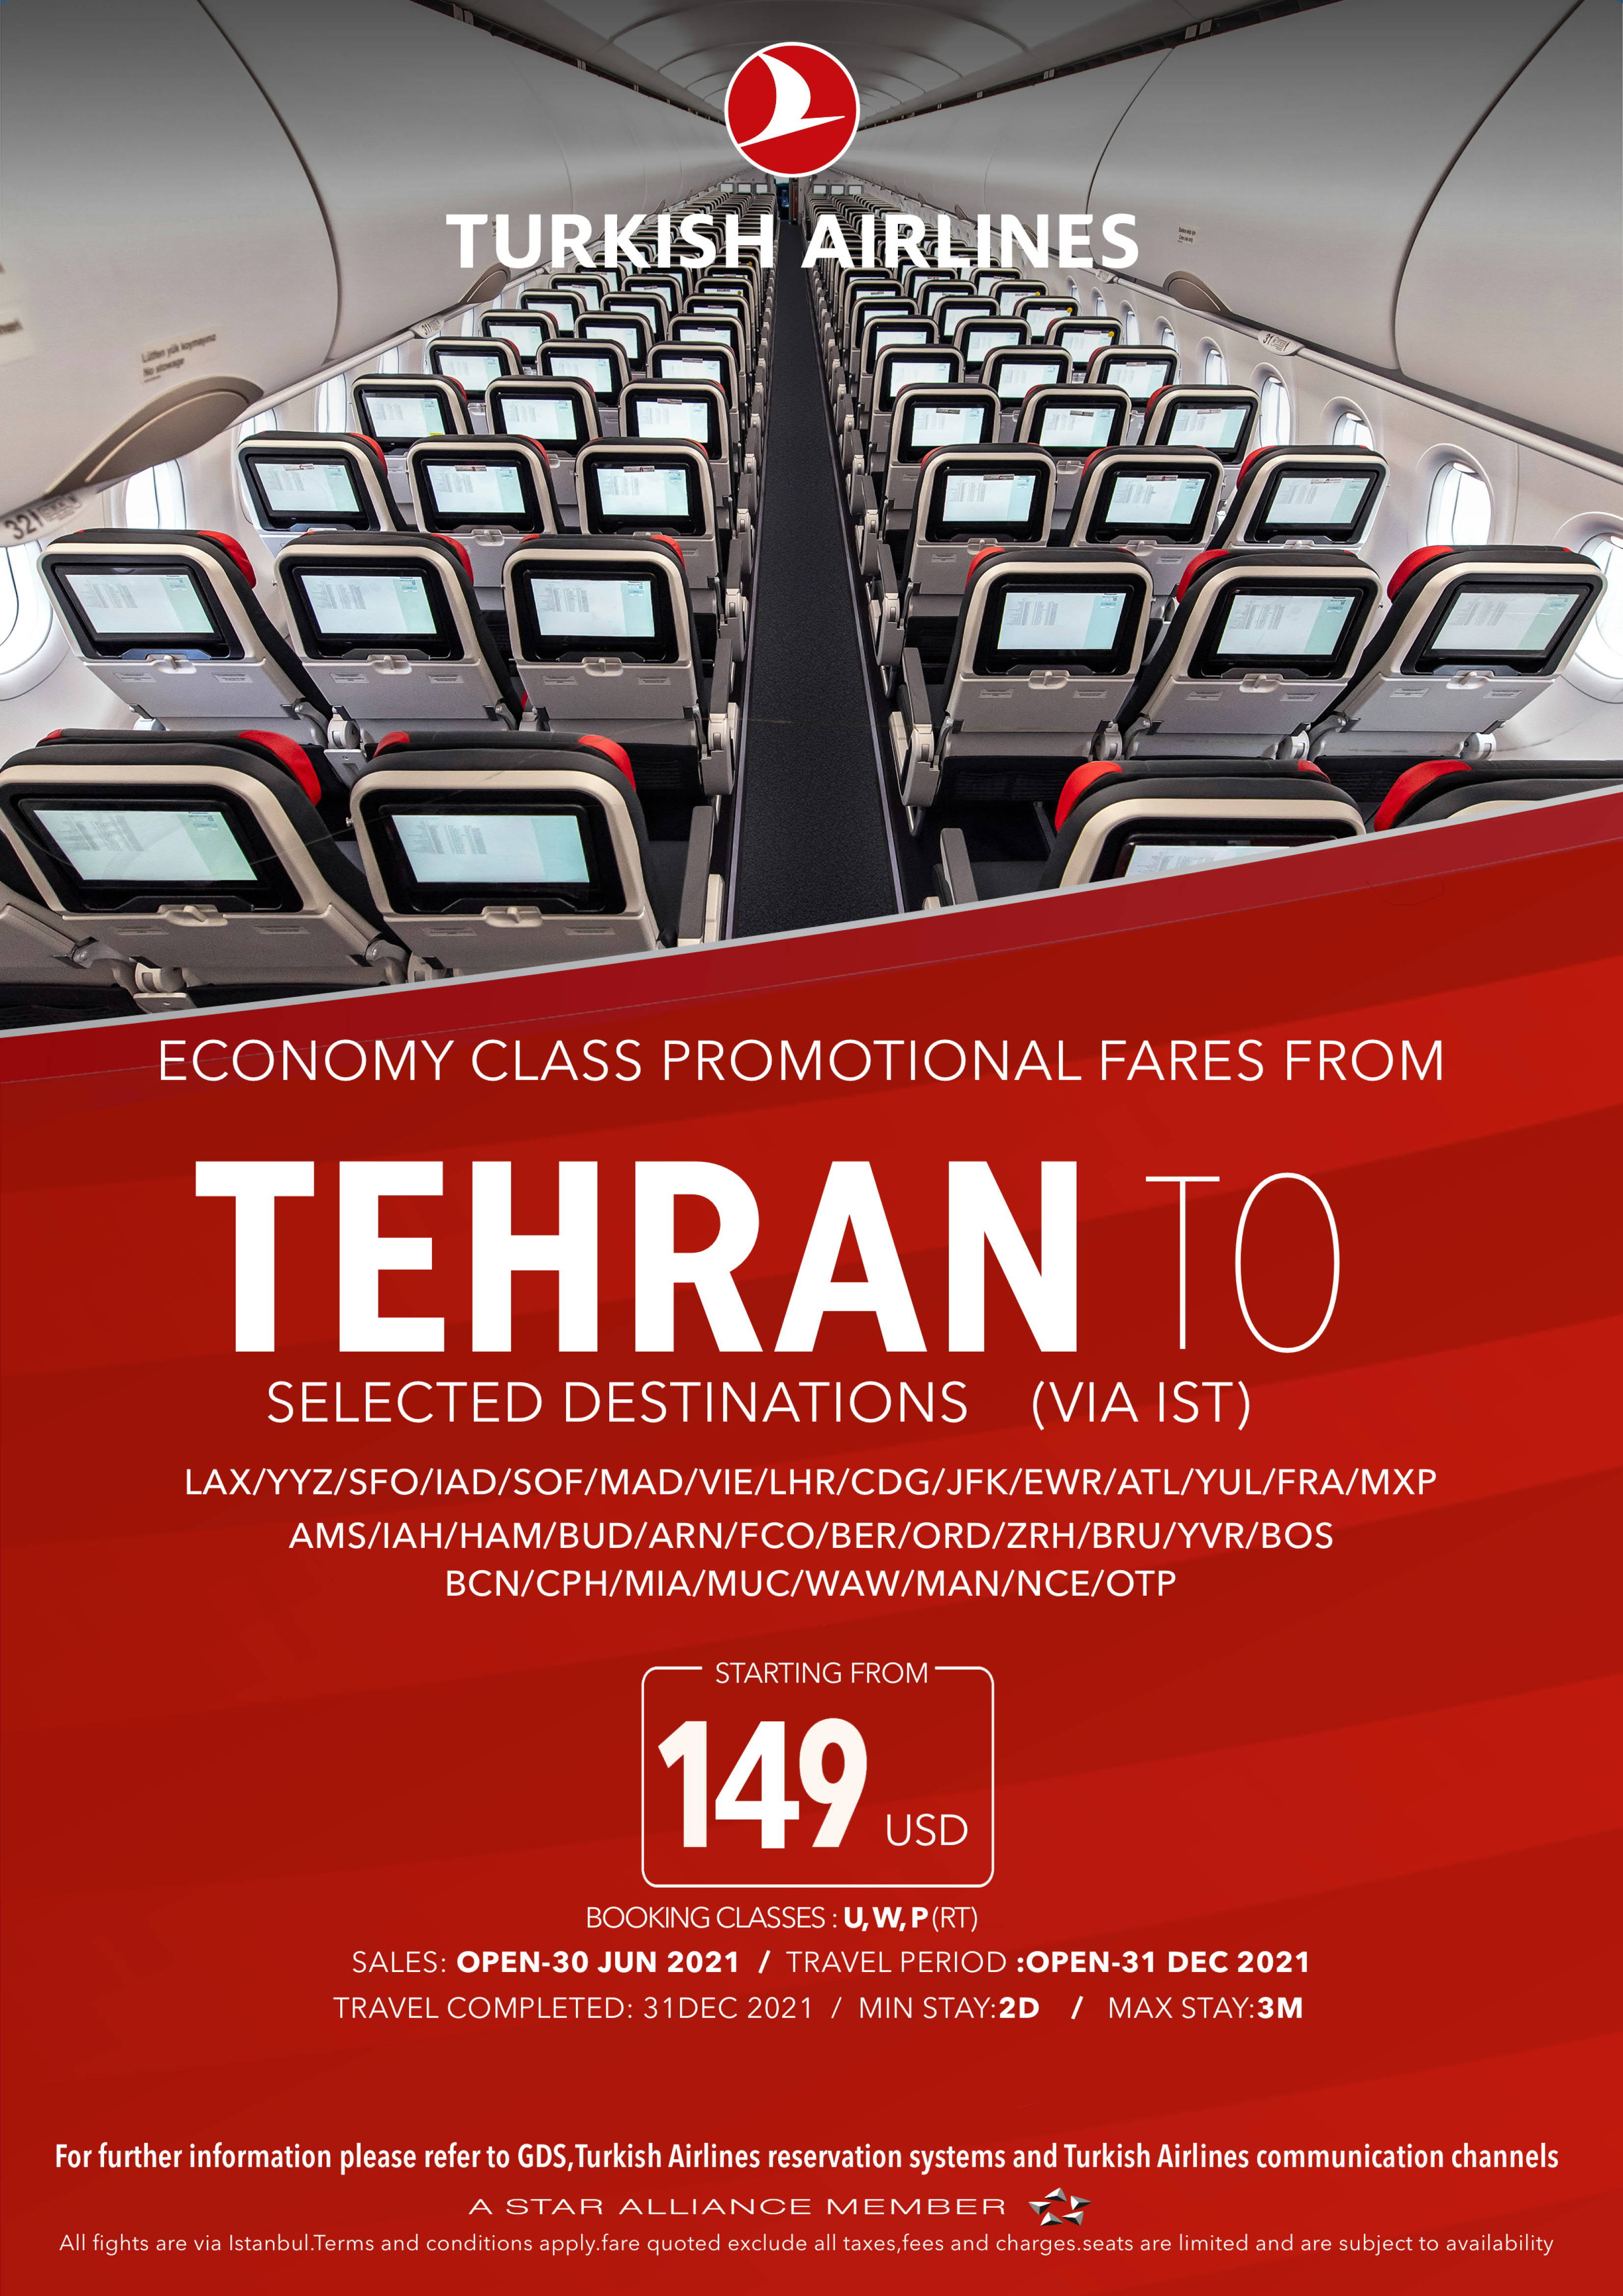 بخشنامه و اطلاعیه   هواپیمایی ترکیش درباره نرخهای ویژه از تهران در کلاسهای اکونومی به مقاصد مختلف